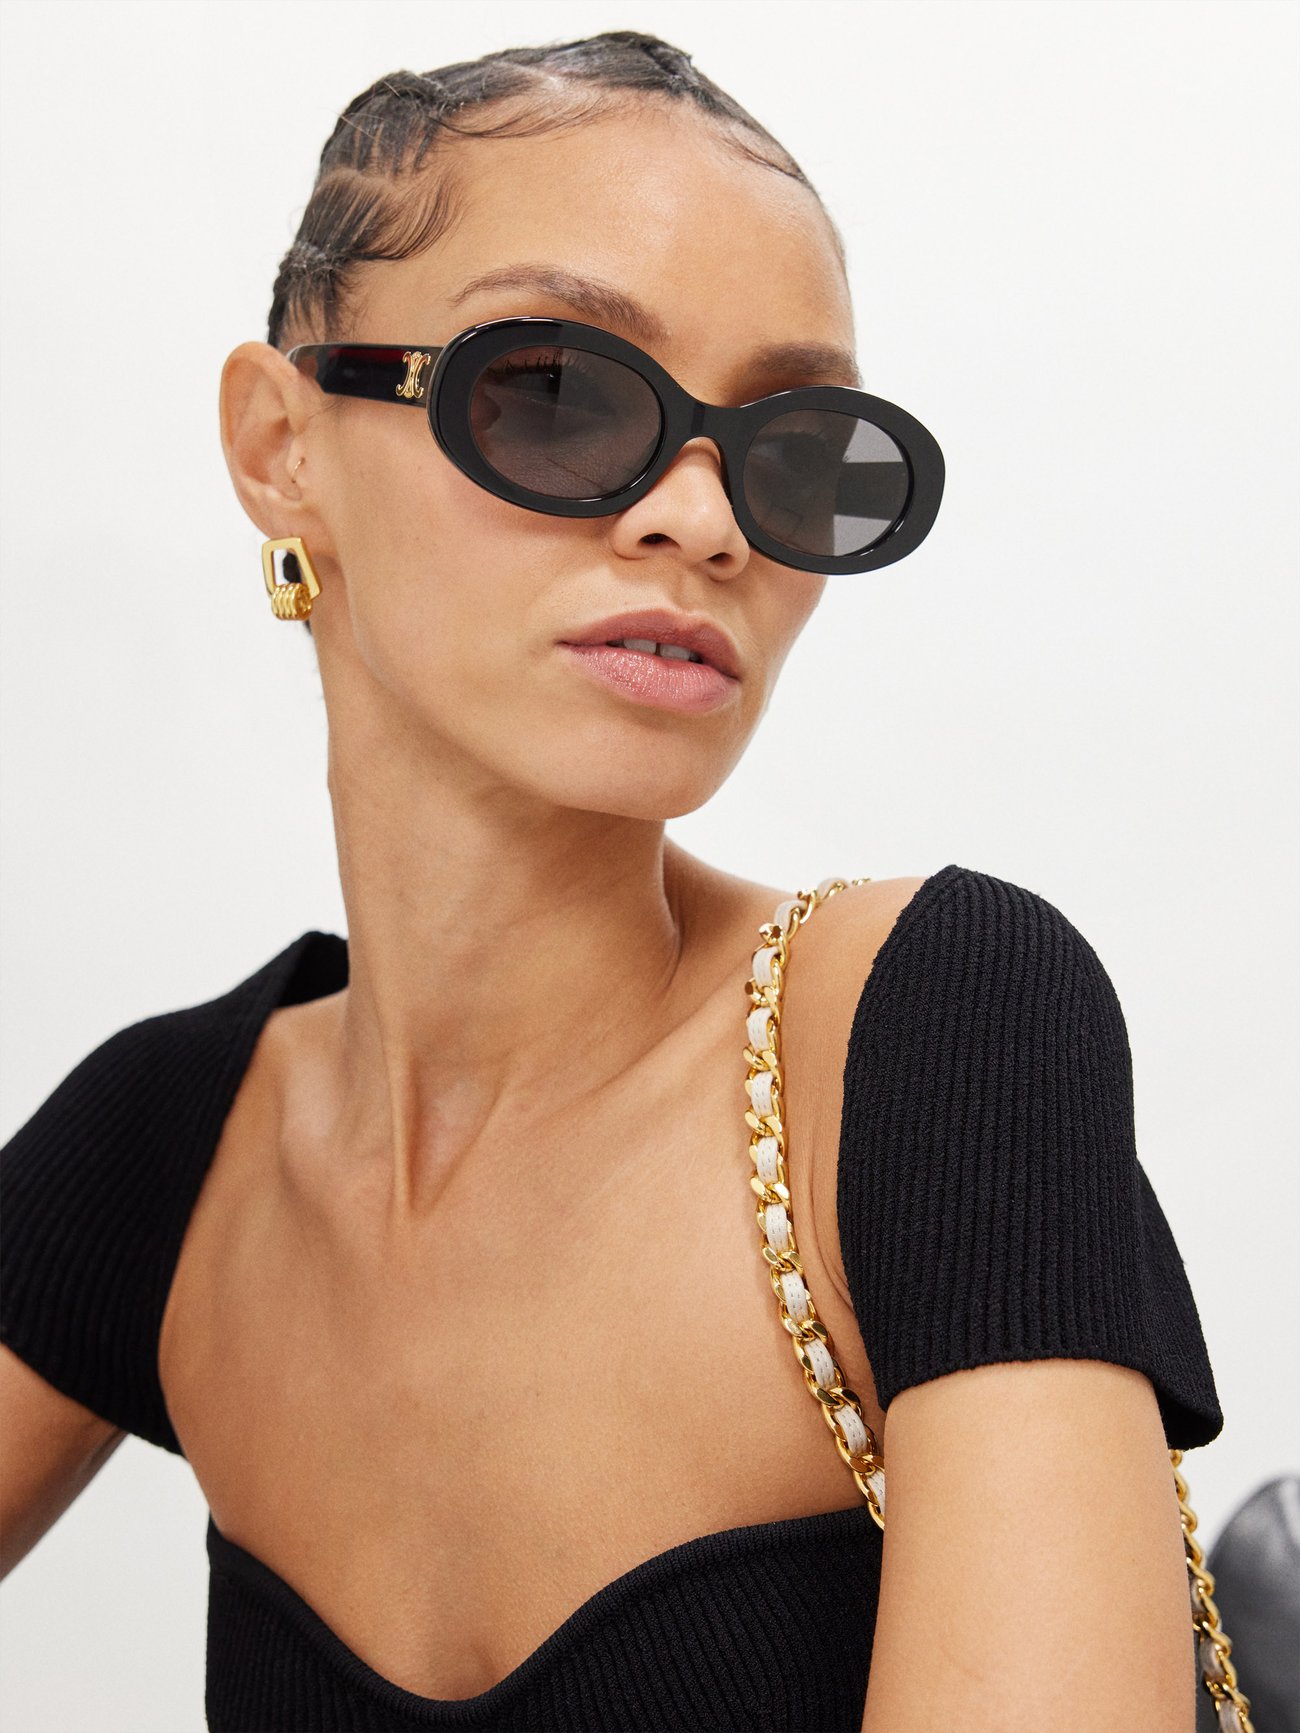 CELINE Sunglasses | Pretavoir | Luxury CELINE SALE - Pretavoir